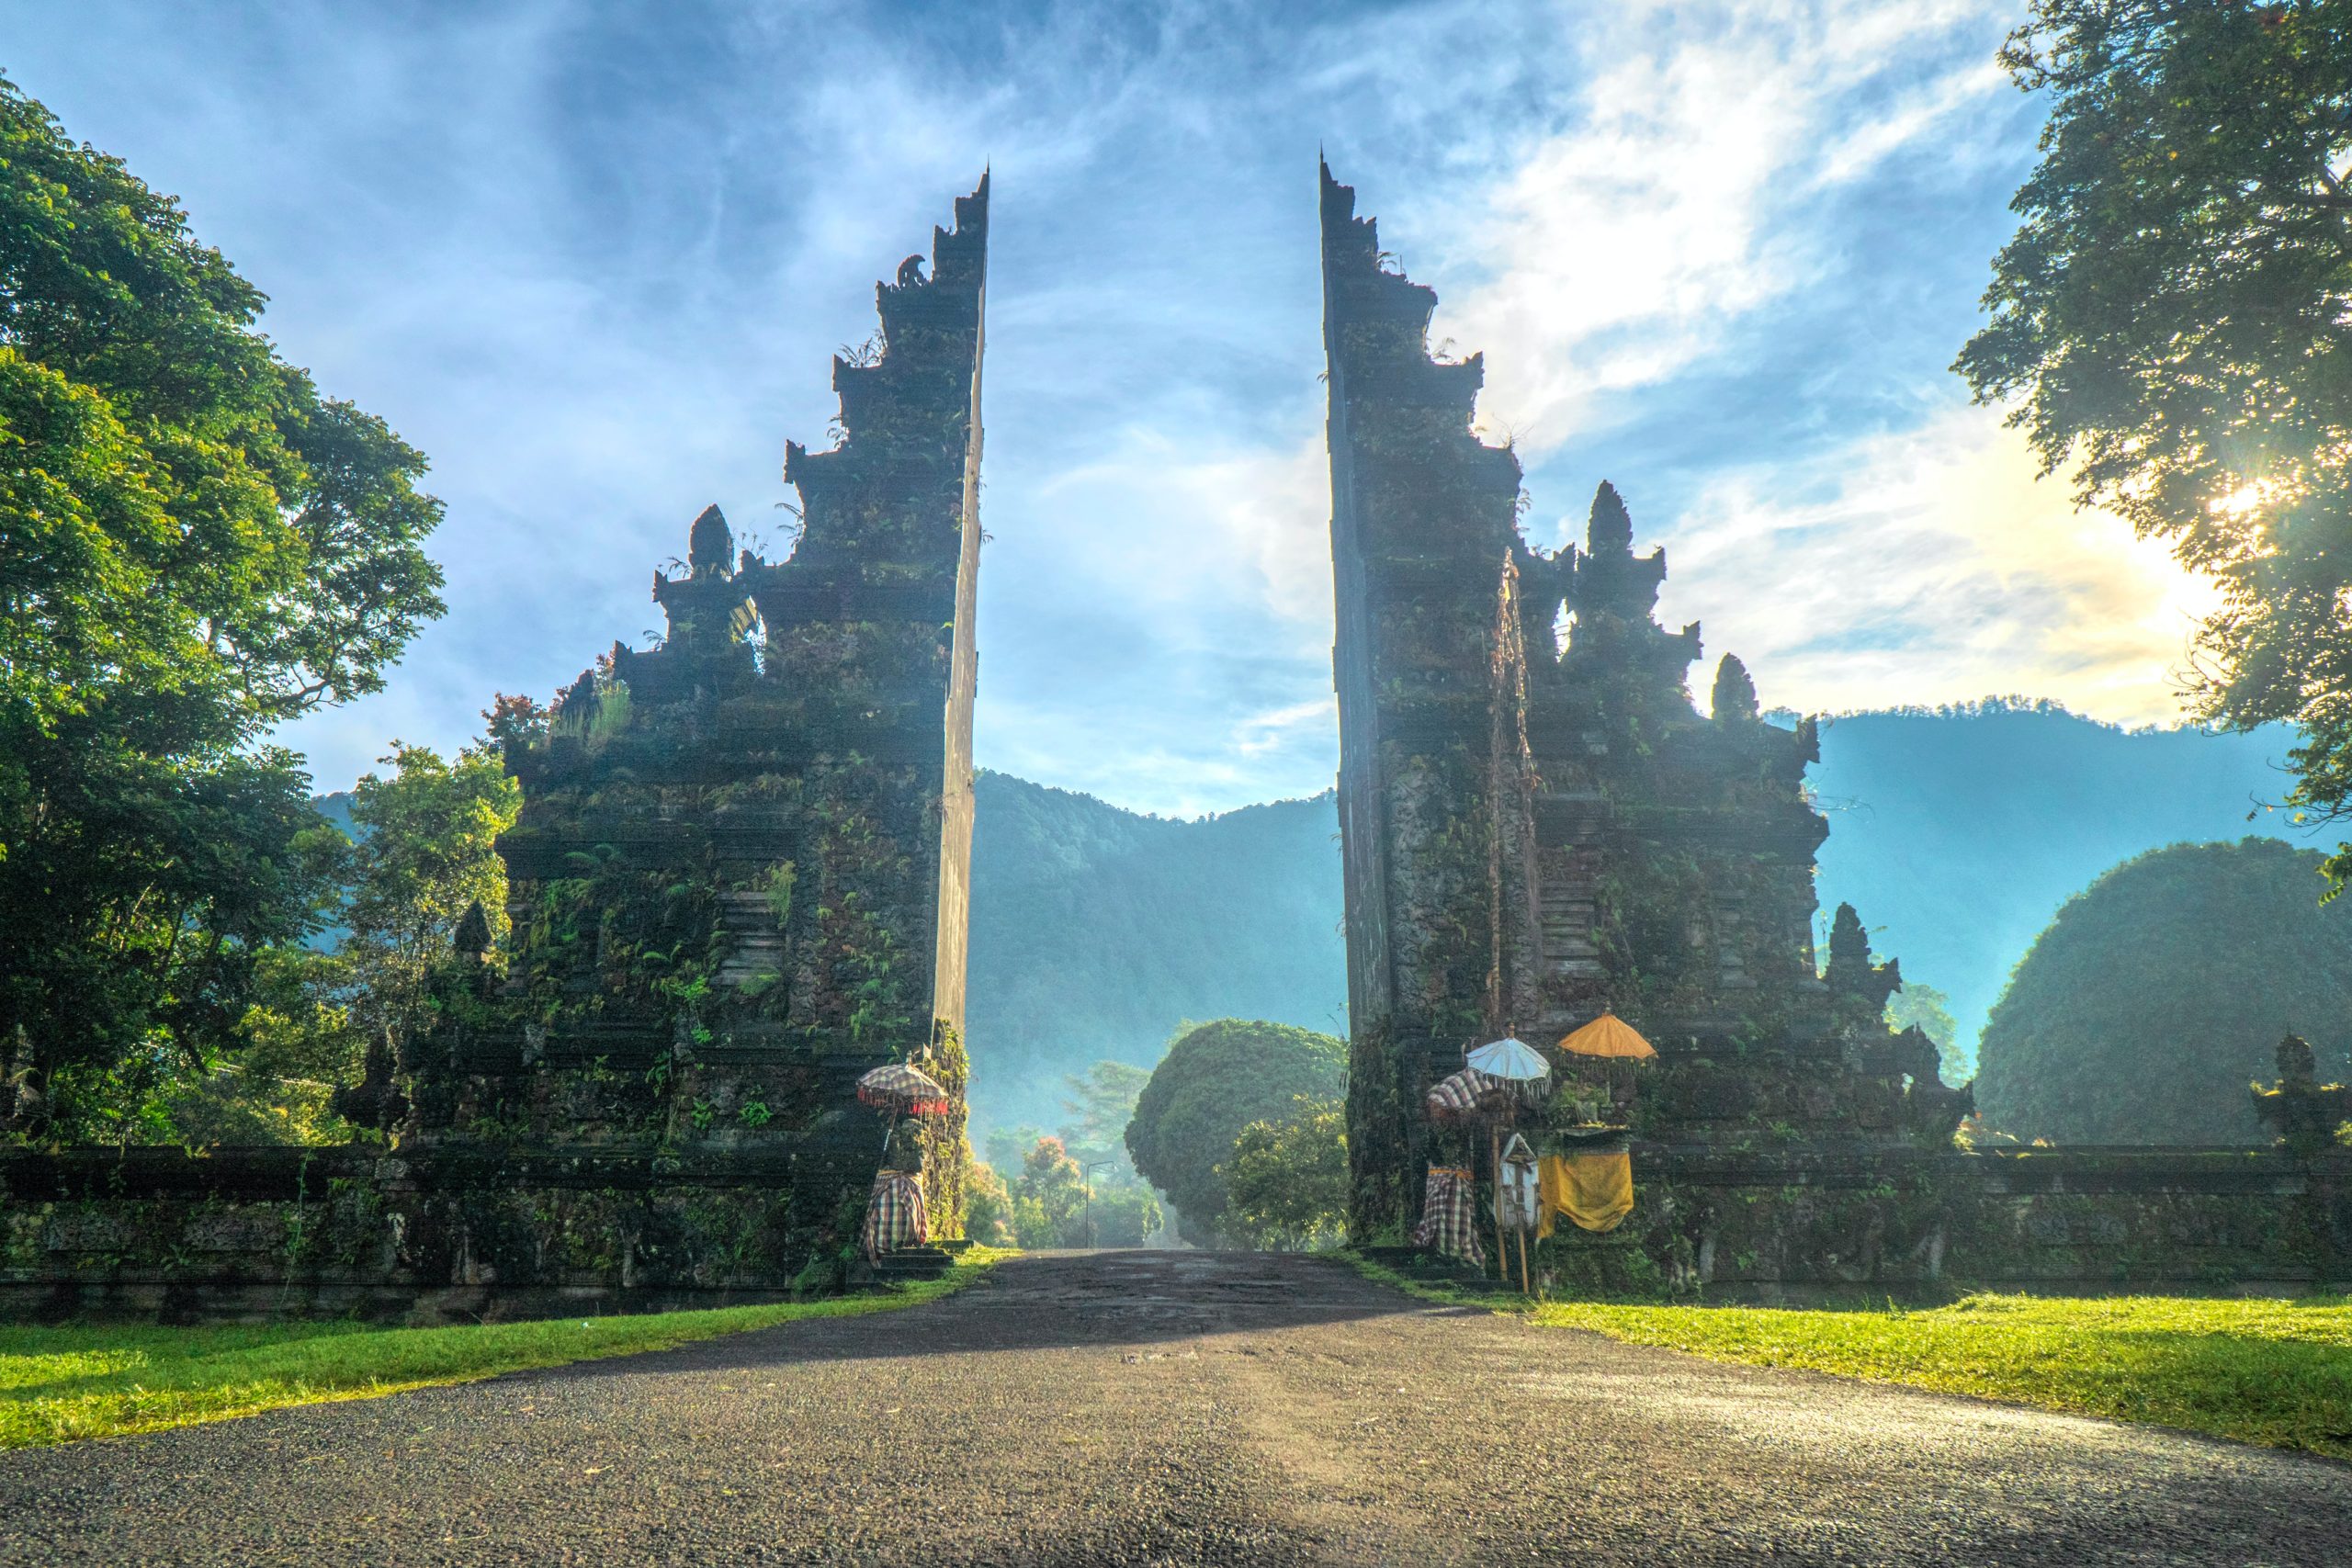 Bali Handara Gate